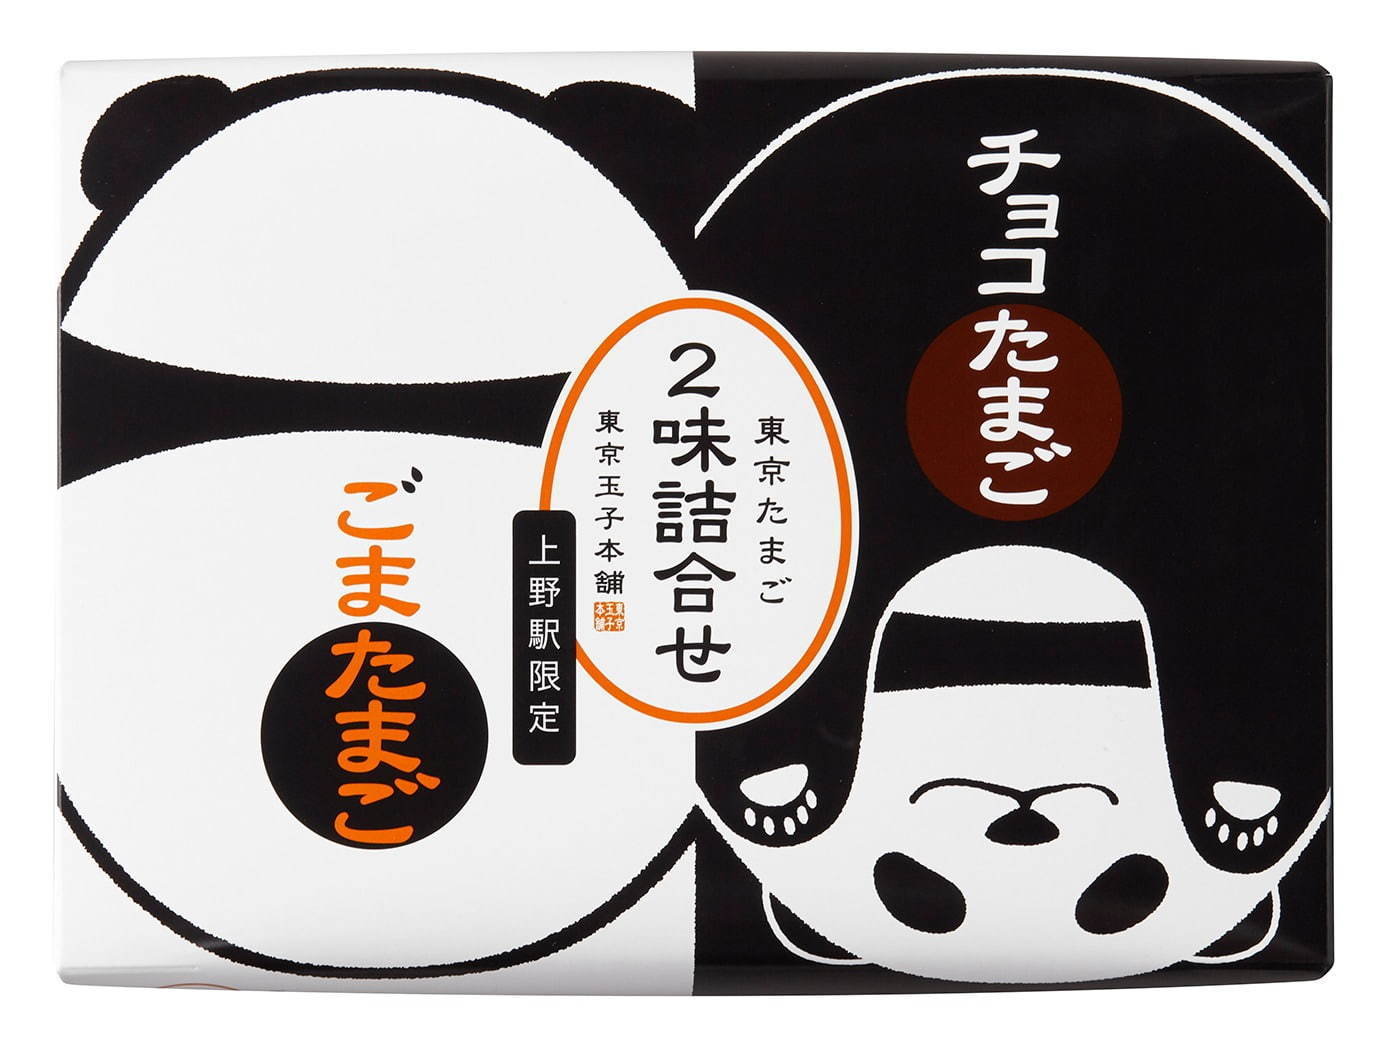 「みやげ菓撰」東京たまご 2味詰合せ 1箱 1,230円(税込)